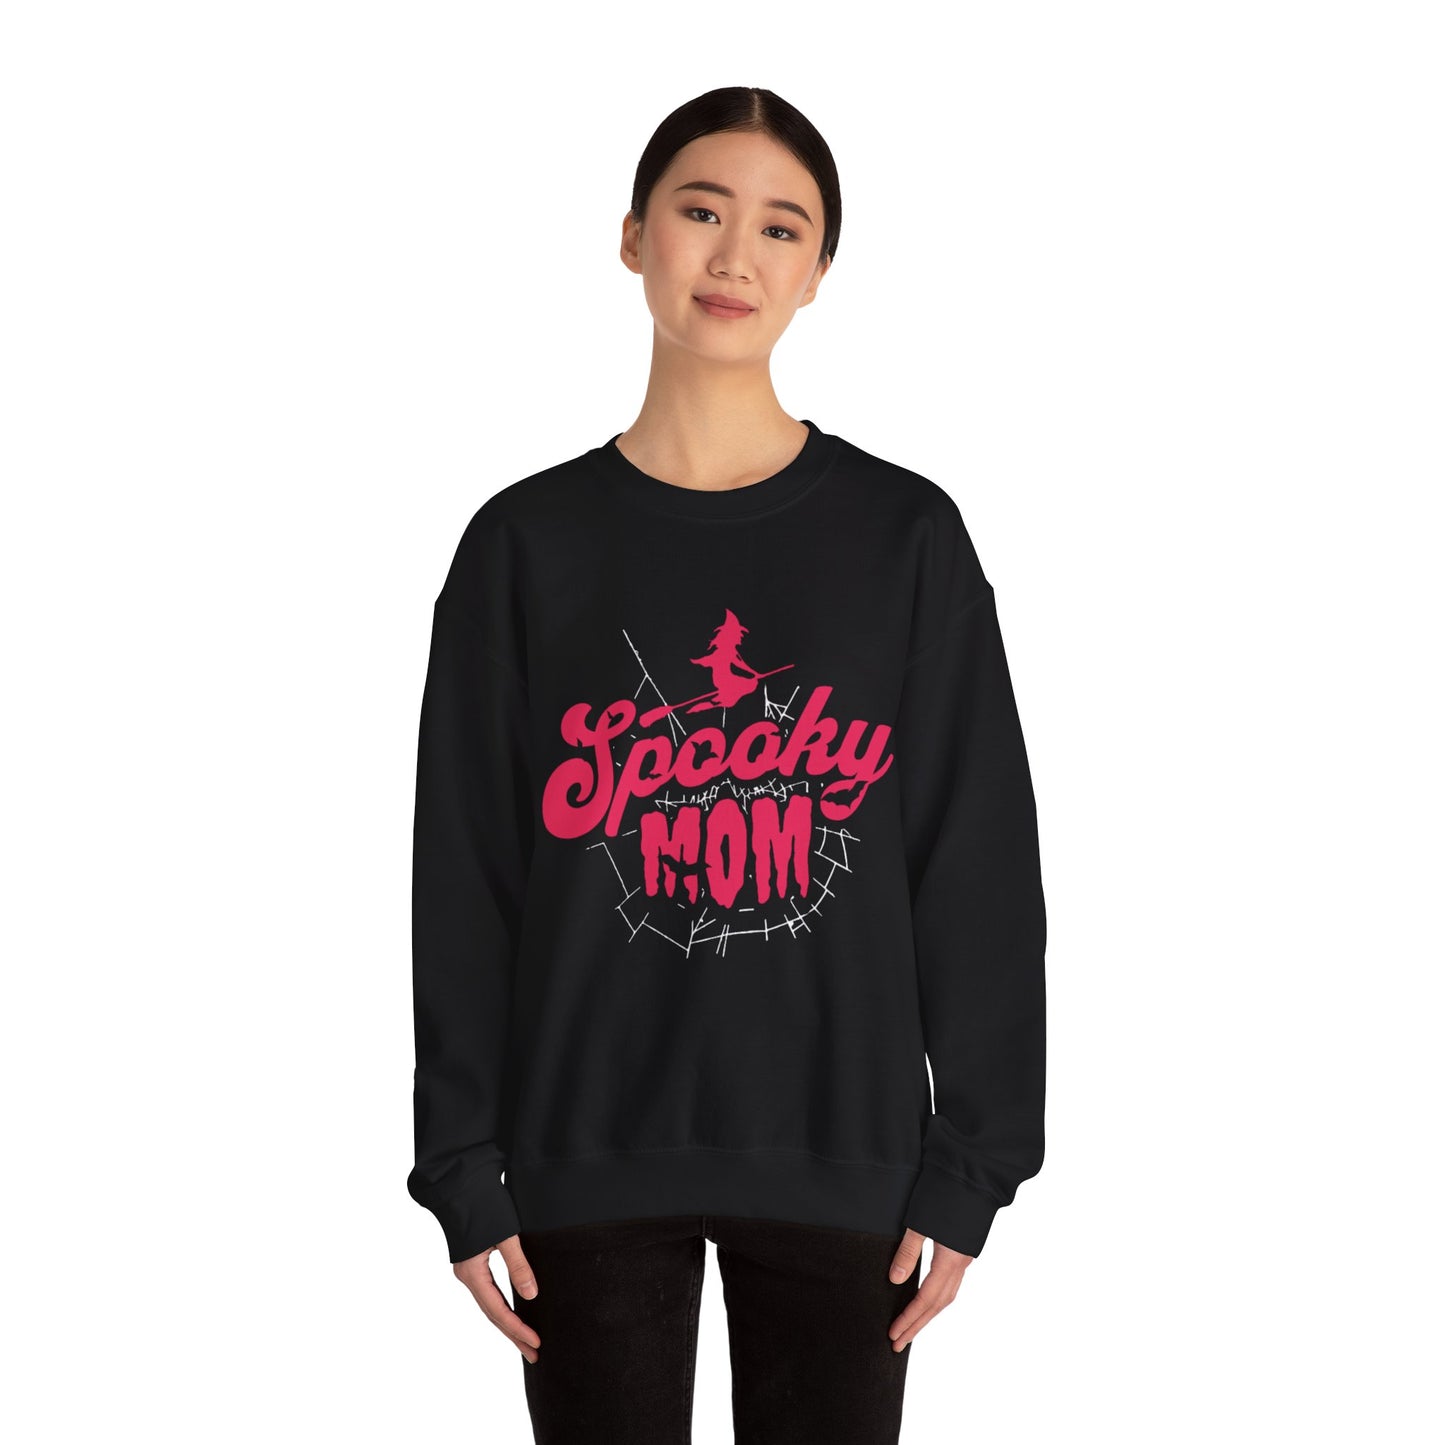 Spooky Mom. Women's Sweatshirt